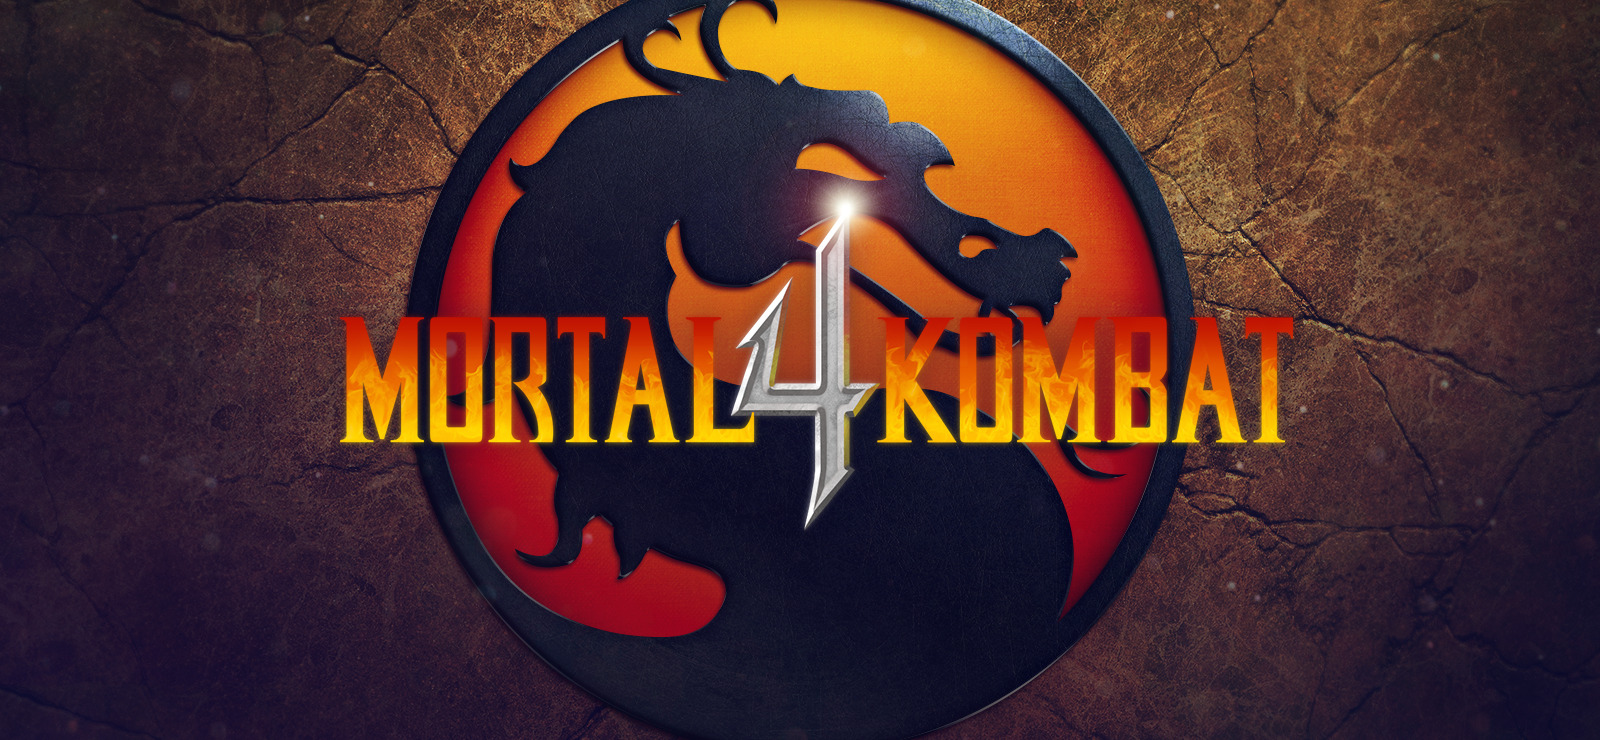 mortal kombat 4 apk games download